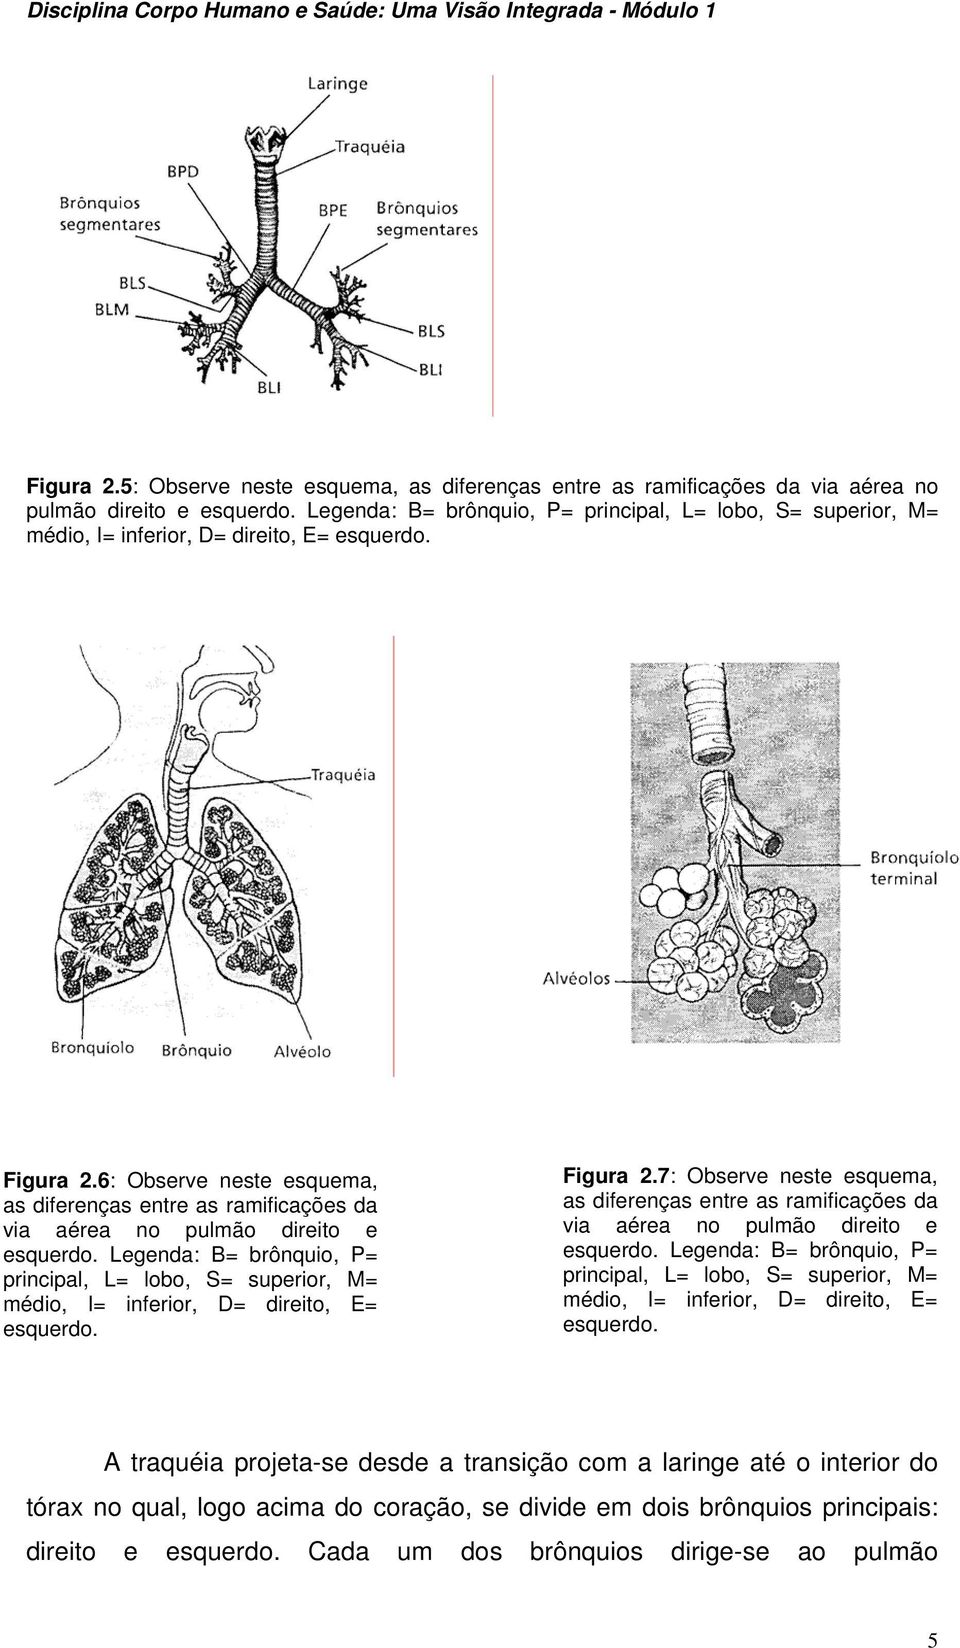 6: Observe neste esquema, as diferenças entre as ramificações da via aérea no pulmão direito e esquerdo.